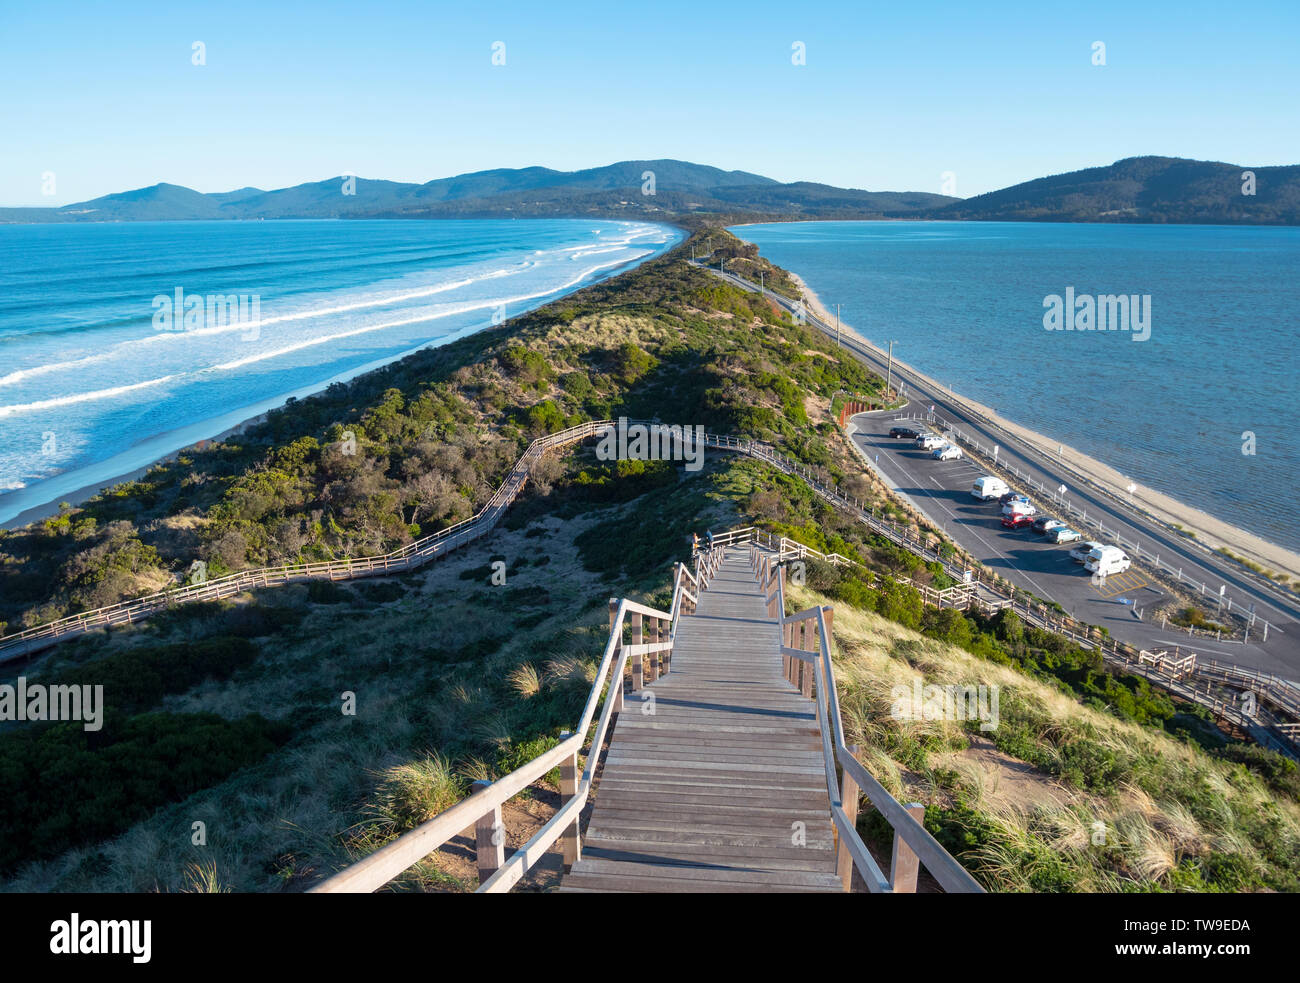 La isla de Bruny en Tasmania es un popular destino turístico de viajes. El cuello es una delgada franja de terreno que une el norte y el sur de la isla. Foto de stock